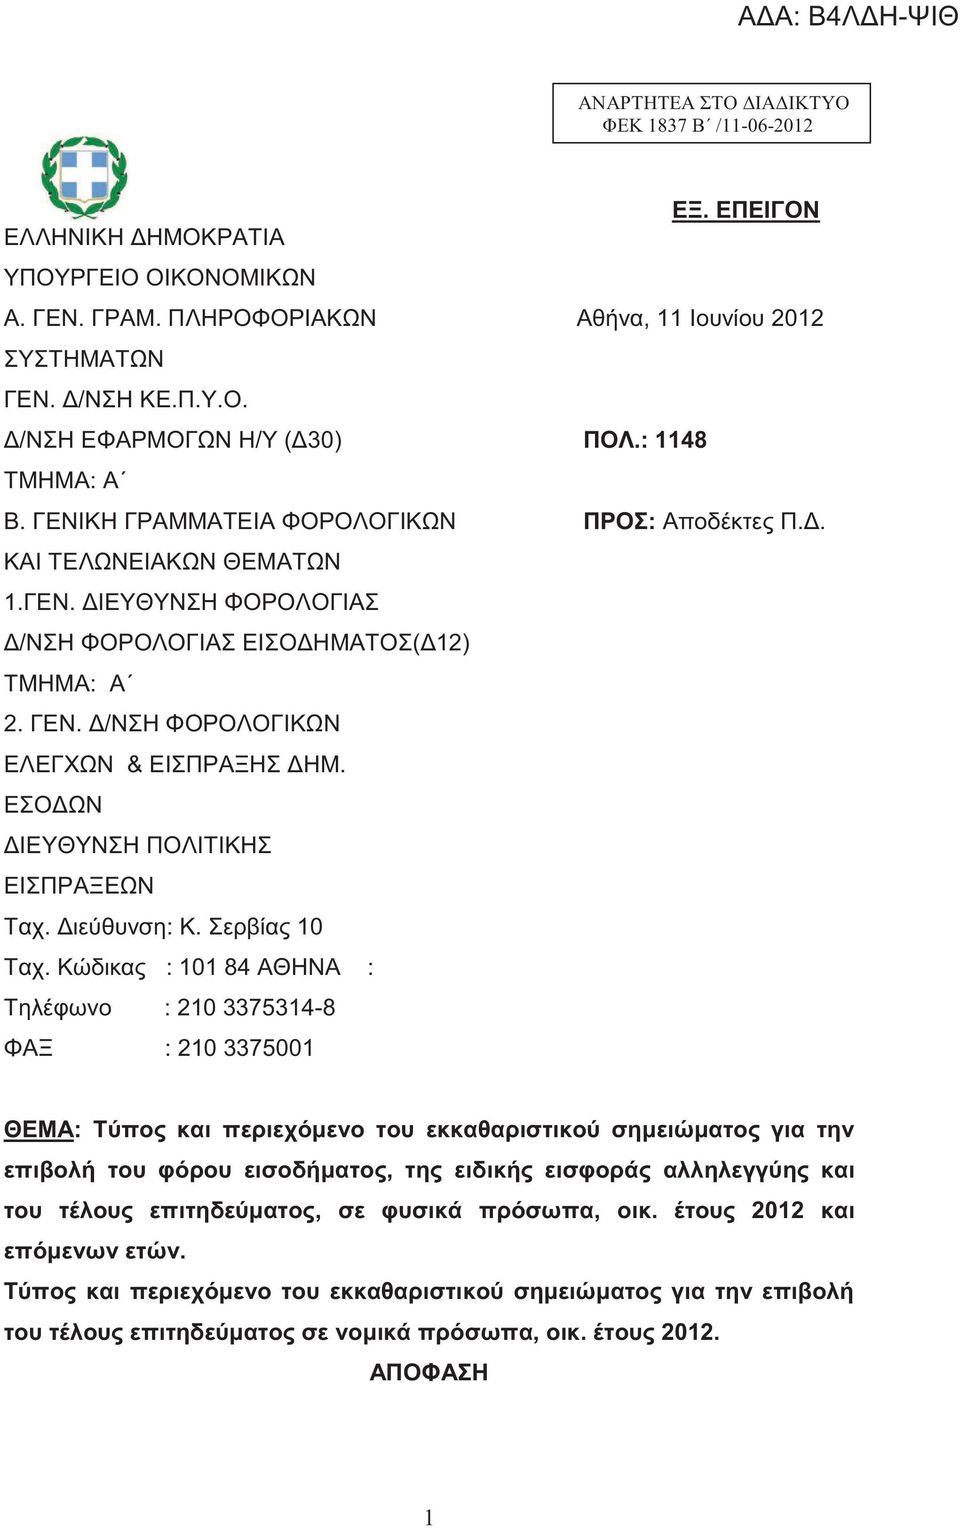 ΕΣΟΔΩΝ ΔΙΕΥΘΥΝΣΗ ΠΟΛΙΤΙΚΗΣ ΕΙΣΠΡΑΞΕΩΝ Ταχ. Διεύθυνση: Κ. Σερβίας 10 Ταχ. Κώδικας : 101 84 ΑΘΗΝΑ : Τηλέφωνο : 210 3375314-8 ΦΑΞ : 210 3375001 ΕΞ. ΕΠΕΙΓΟΝ Αθήνα, 11 Ιουνίου 2012 ΠΟΛ.